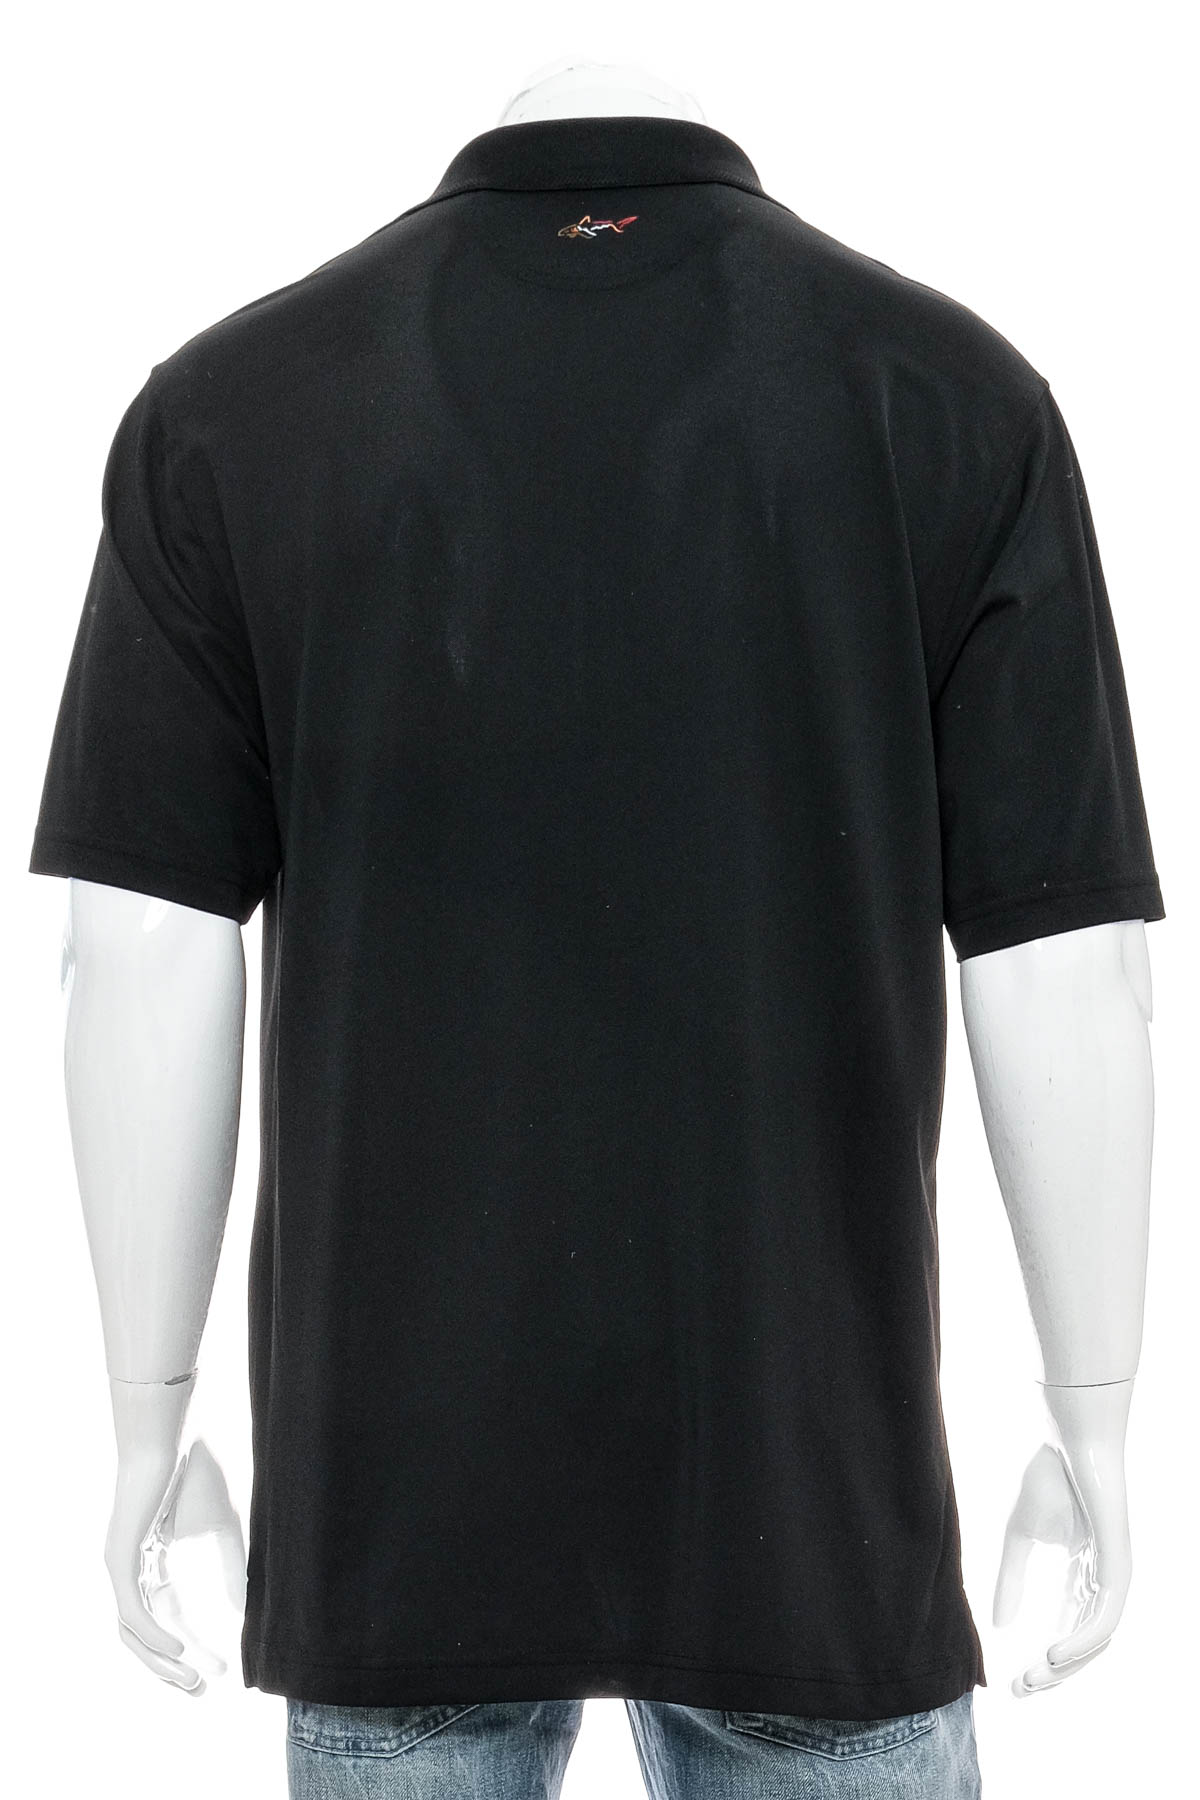 Men's T-shirt - Greg Norman - 1